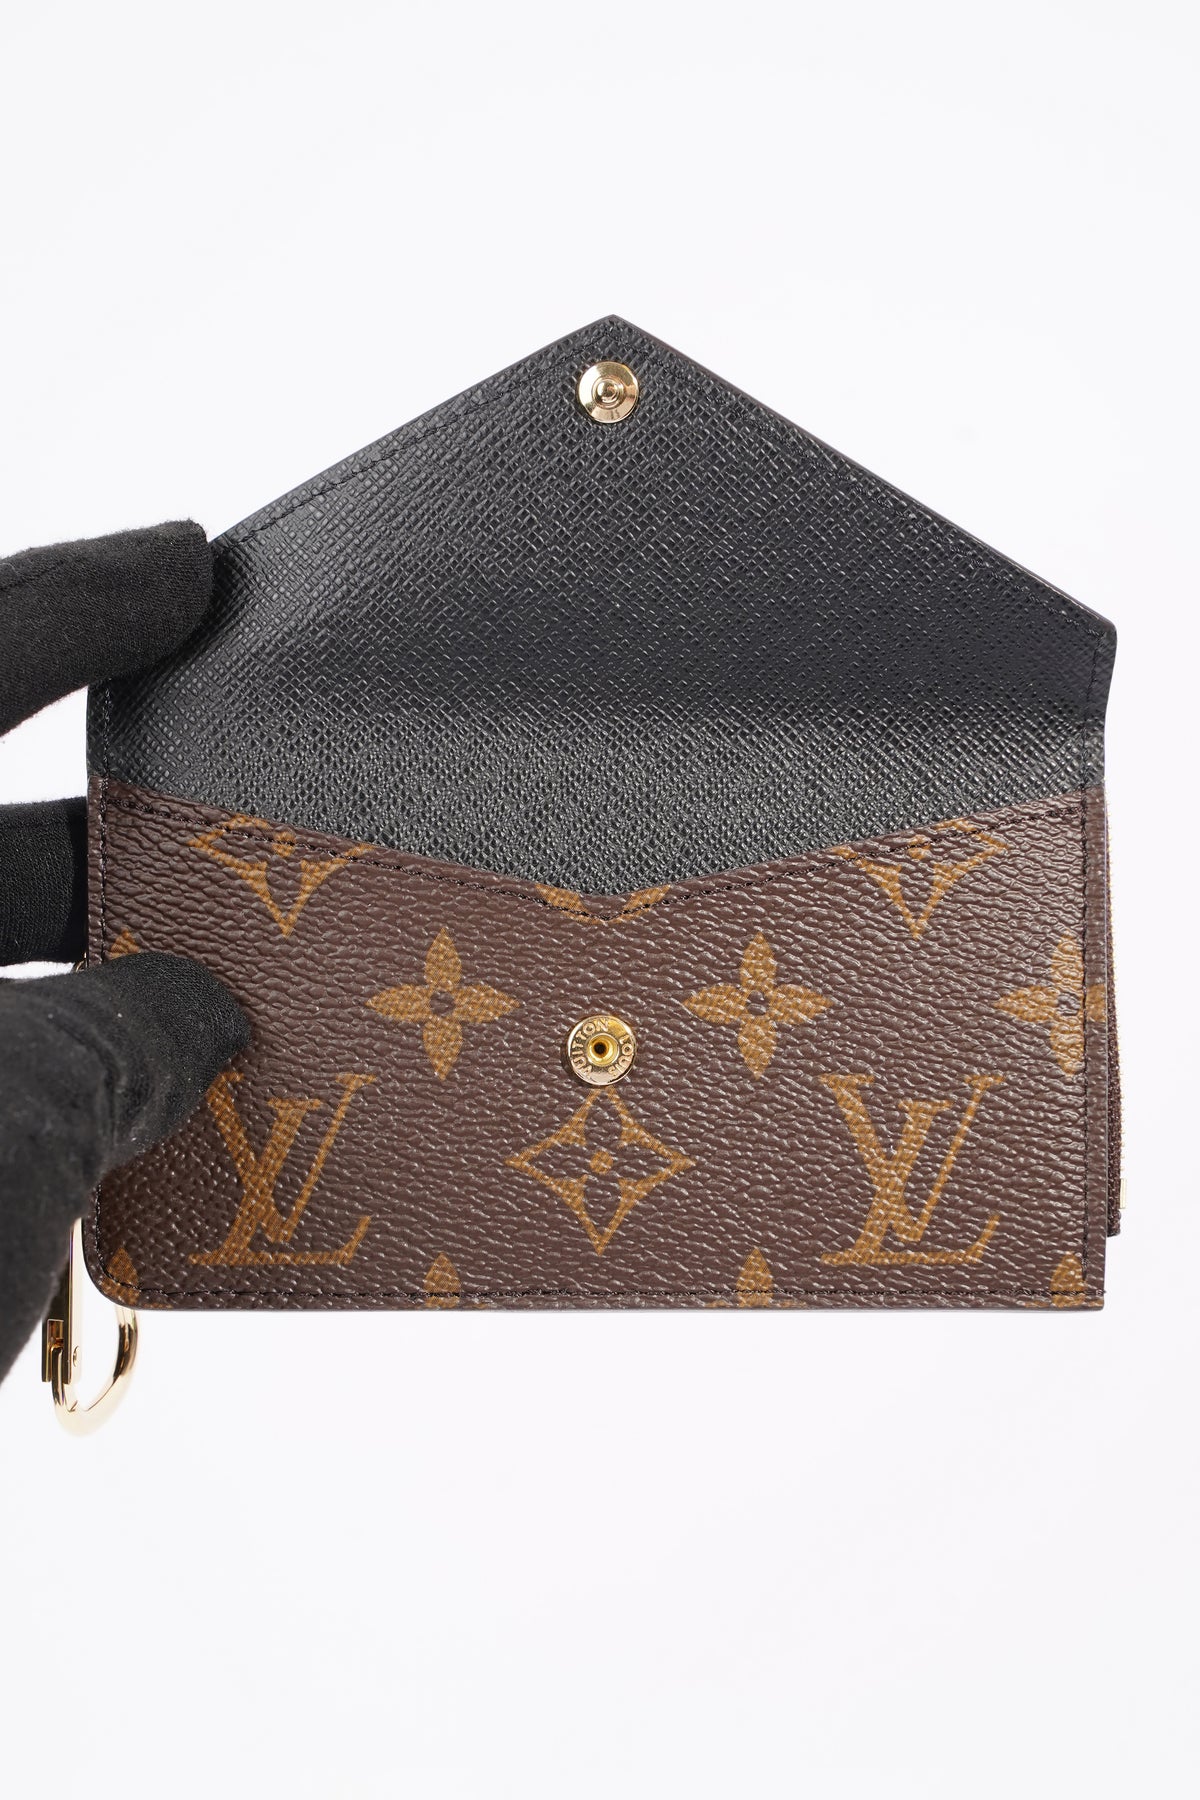 Louis Vuitton, Bags, Louis Vuitton Monogram Recto Verso Wallet